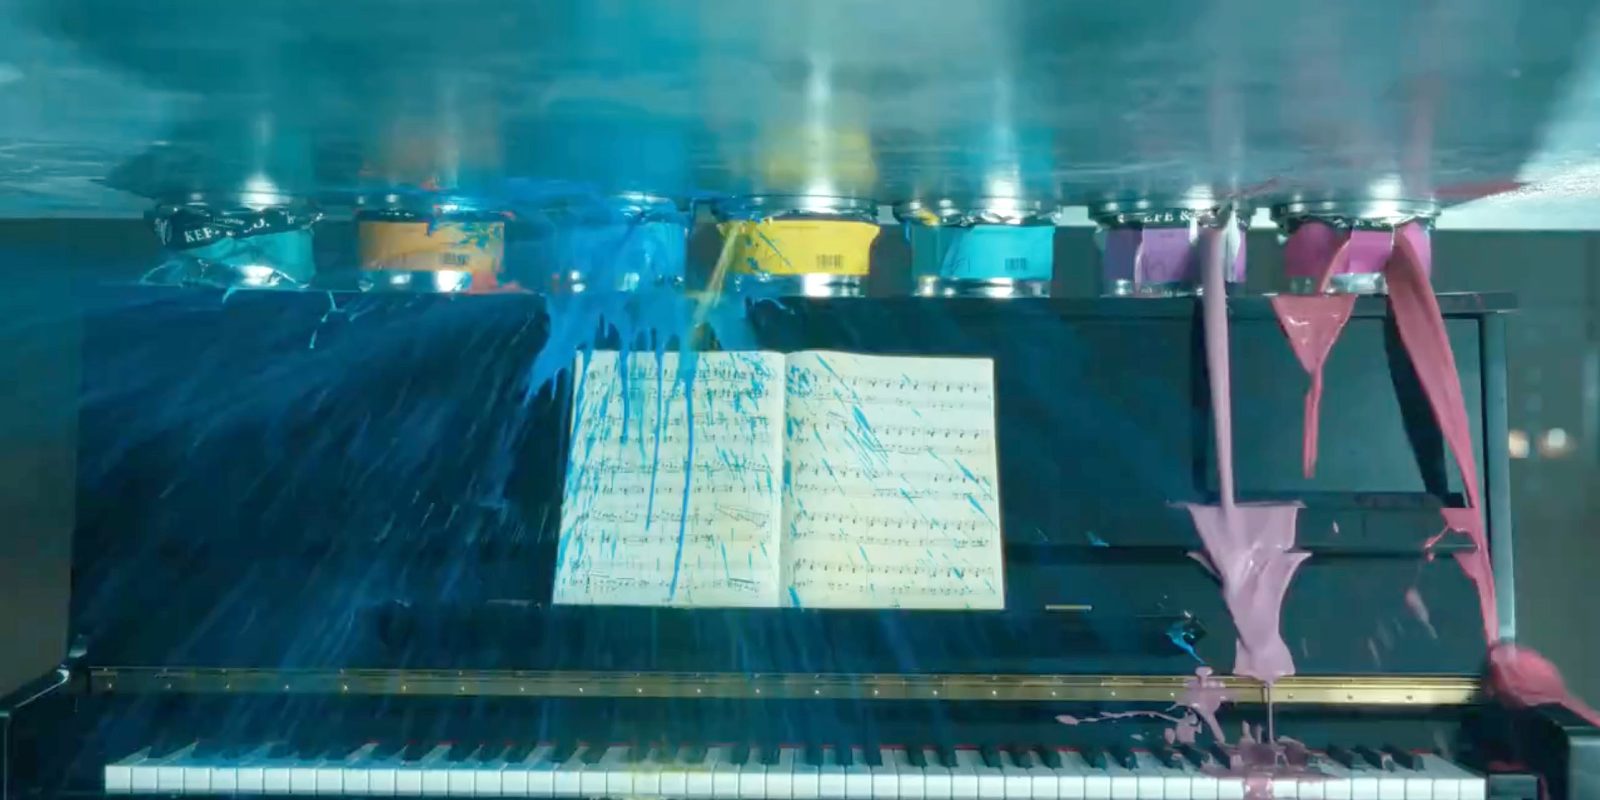 Image fixe d'une publicité pour iPad Pro, montrant des peintures écrasées et ruinant un piano